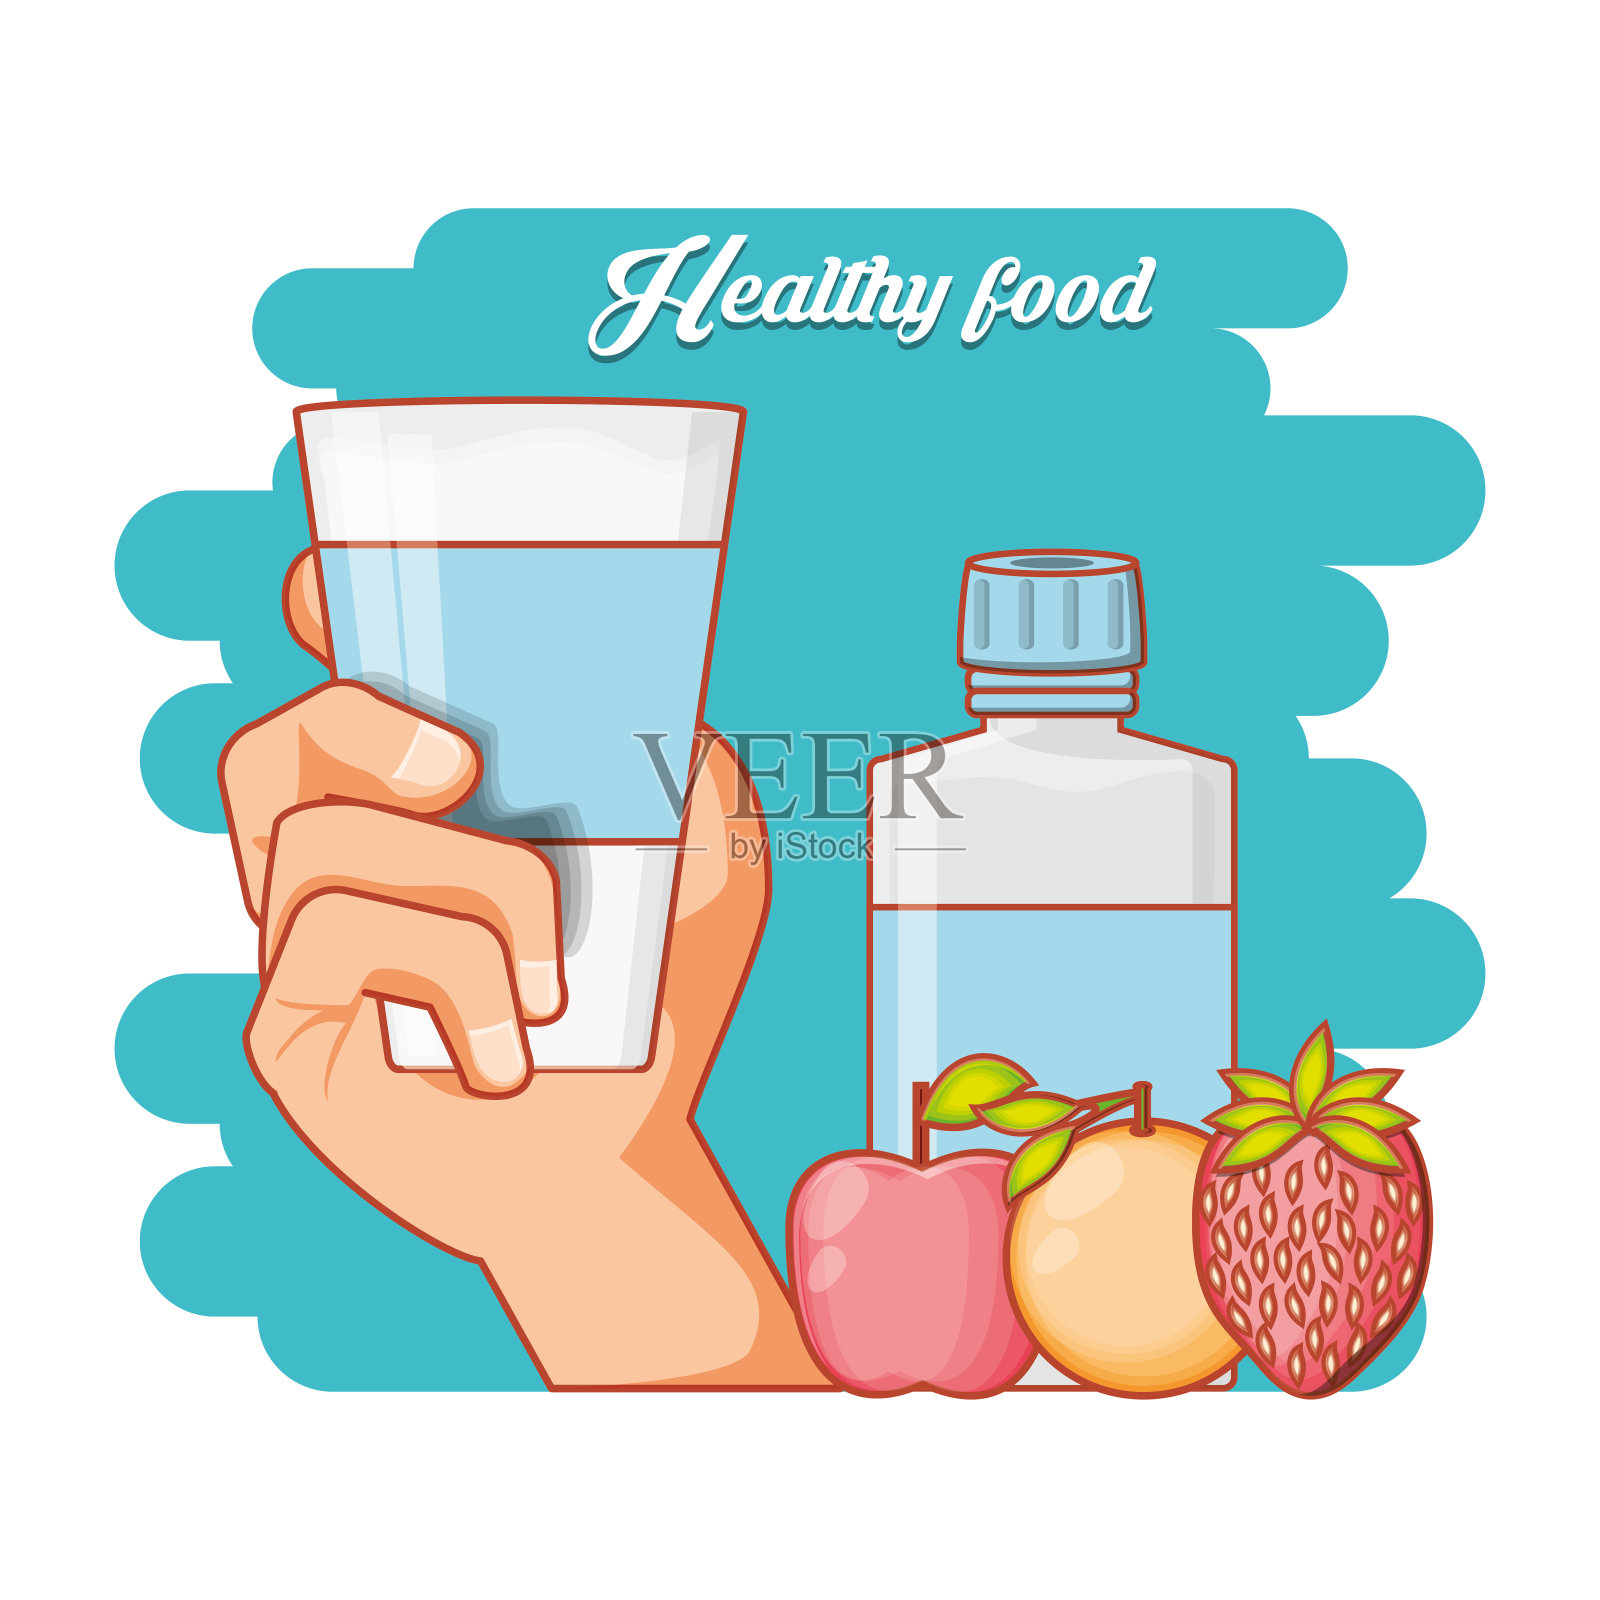 健康饮食系列产品插画图片素材